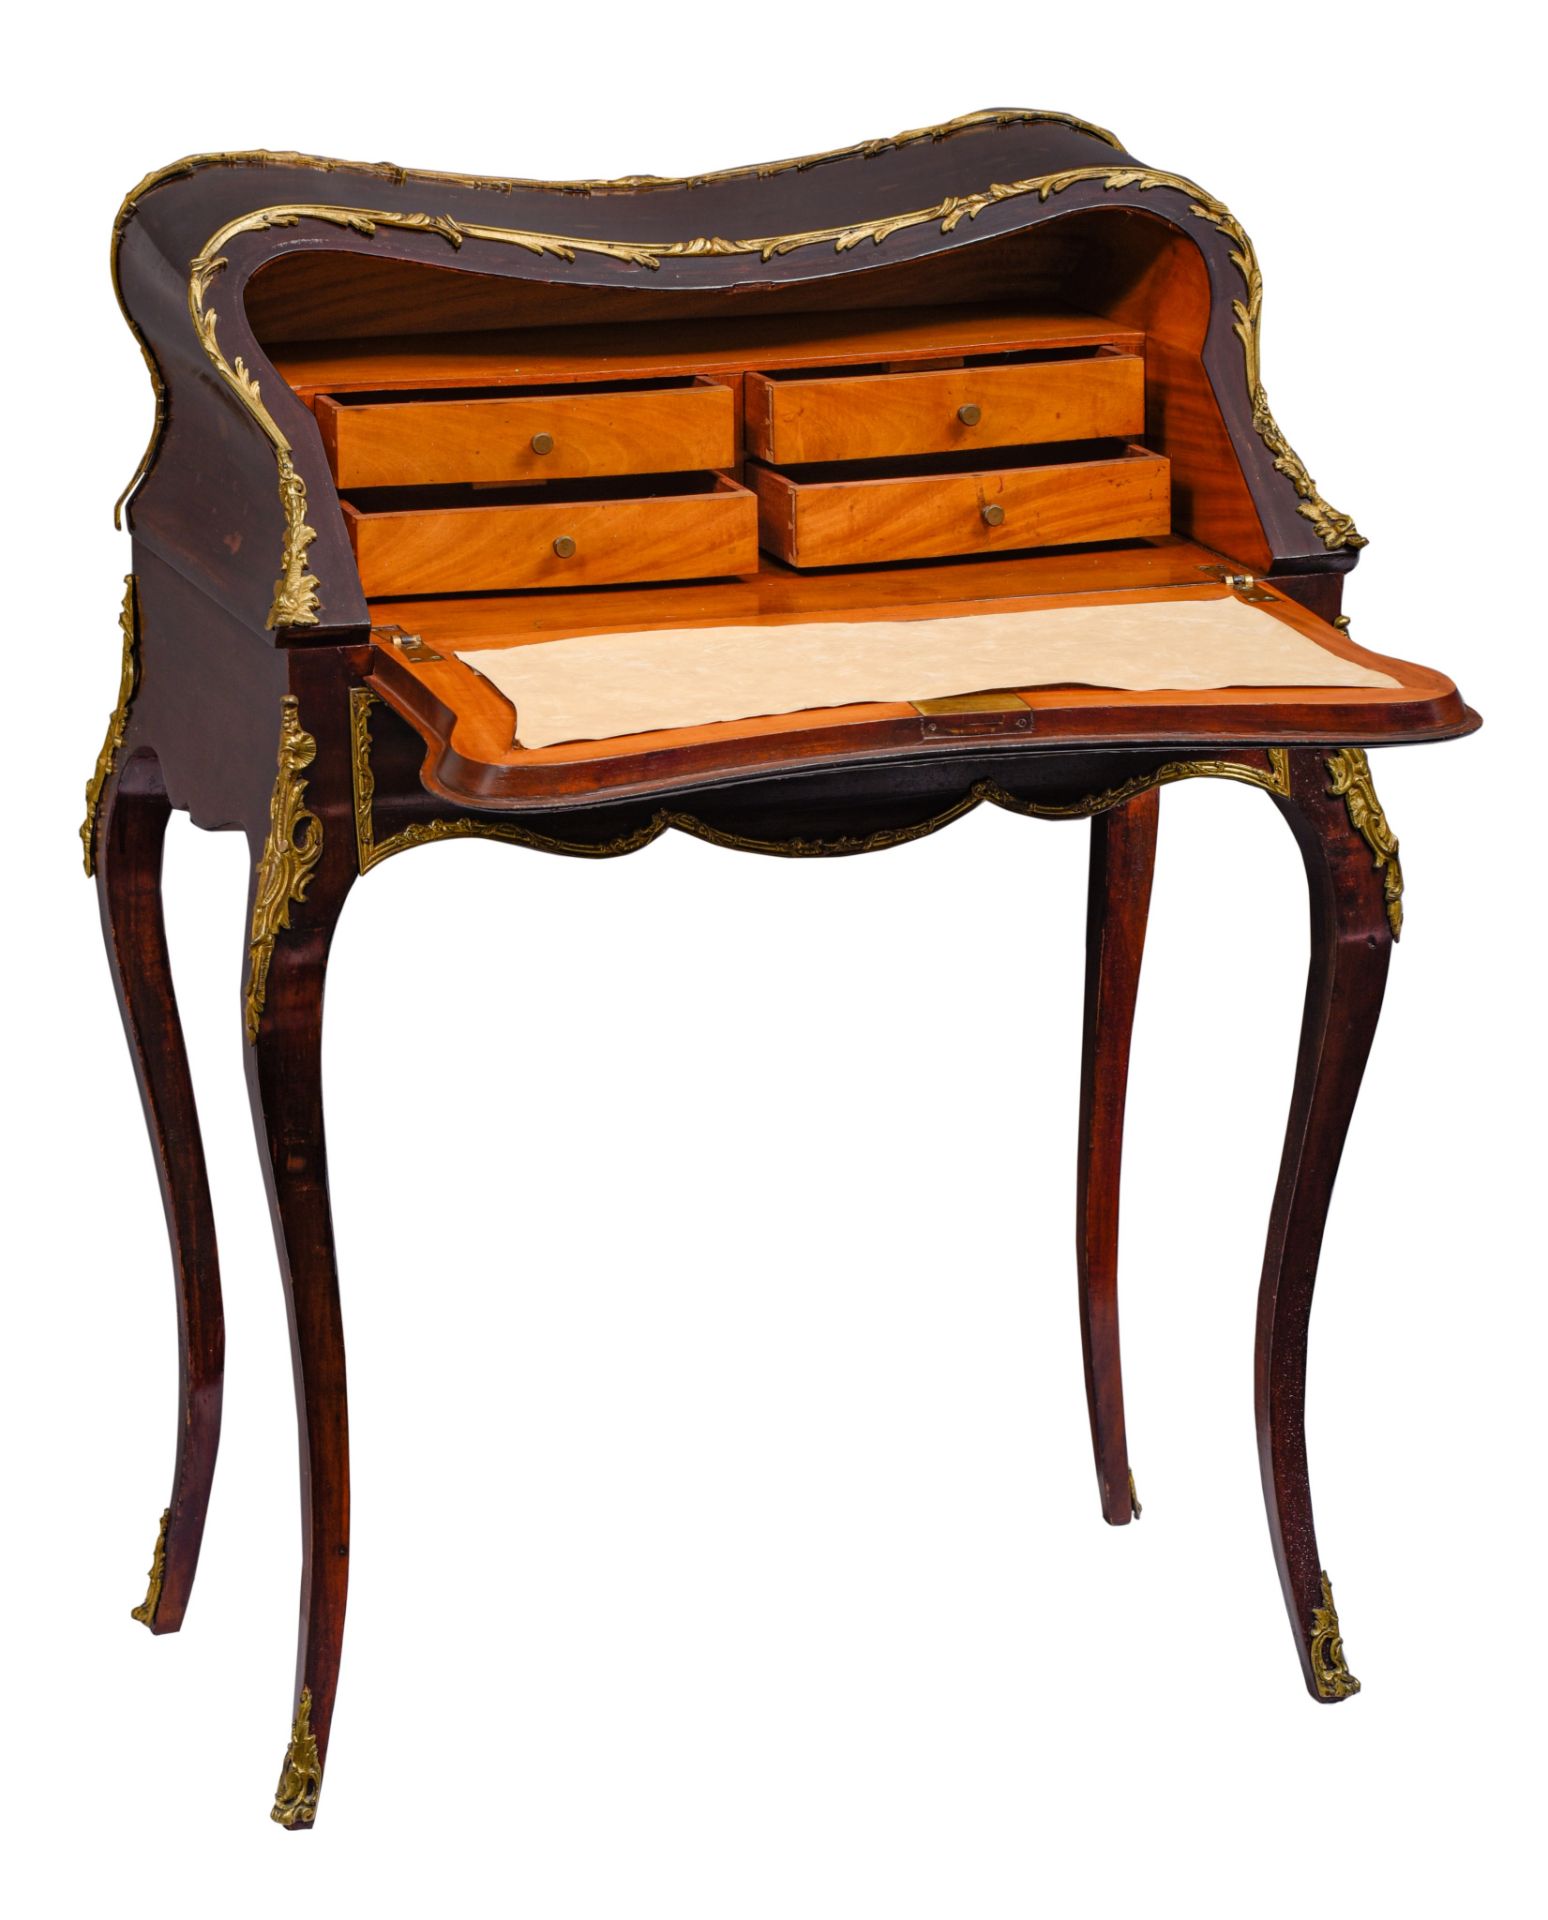 A Louis XV style rosewood 'sécretaire dos d’âne', H 97 - W 74 - D 46 - 75 cm - Image 9 of 9